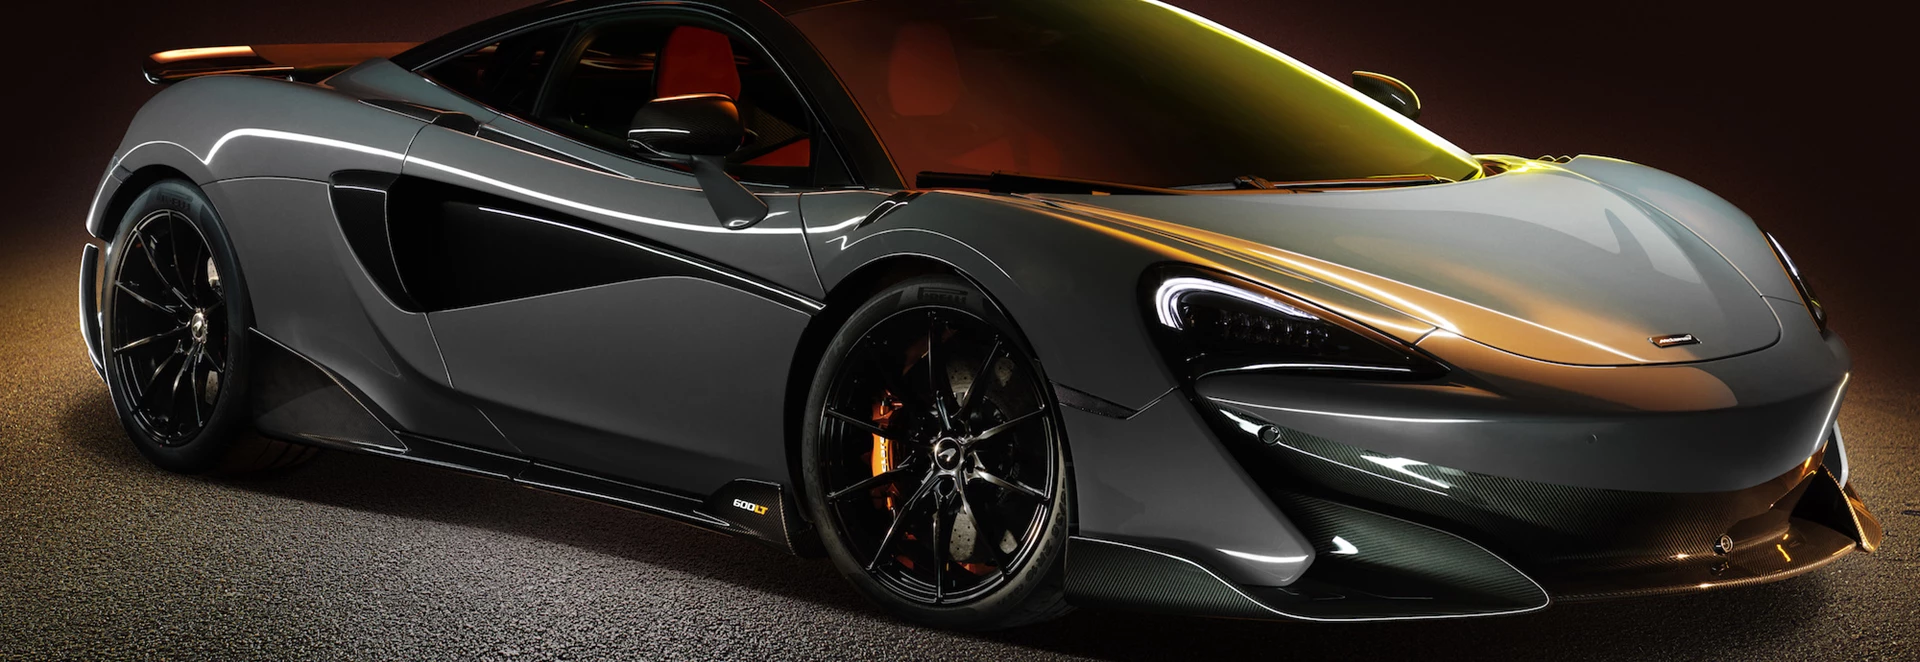 McLaren reveals latest ‘Longtail’ model – the 600LT